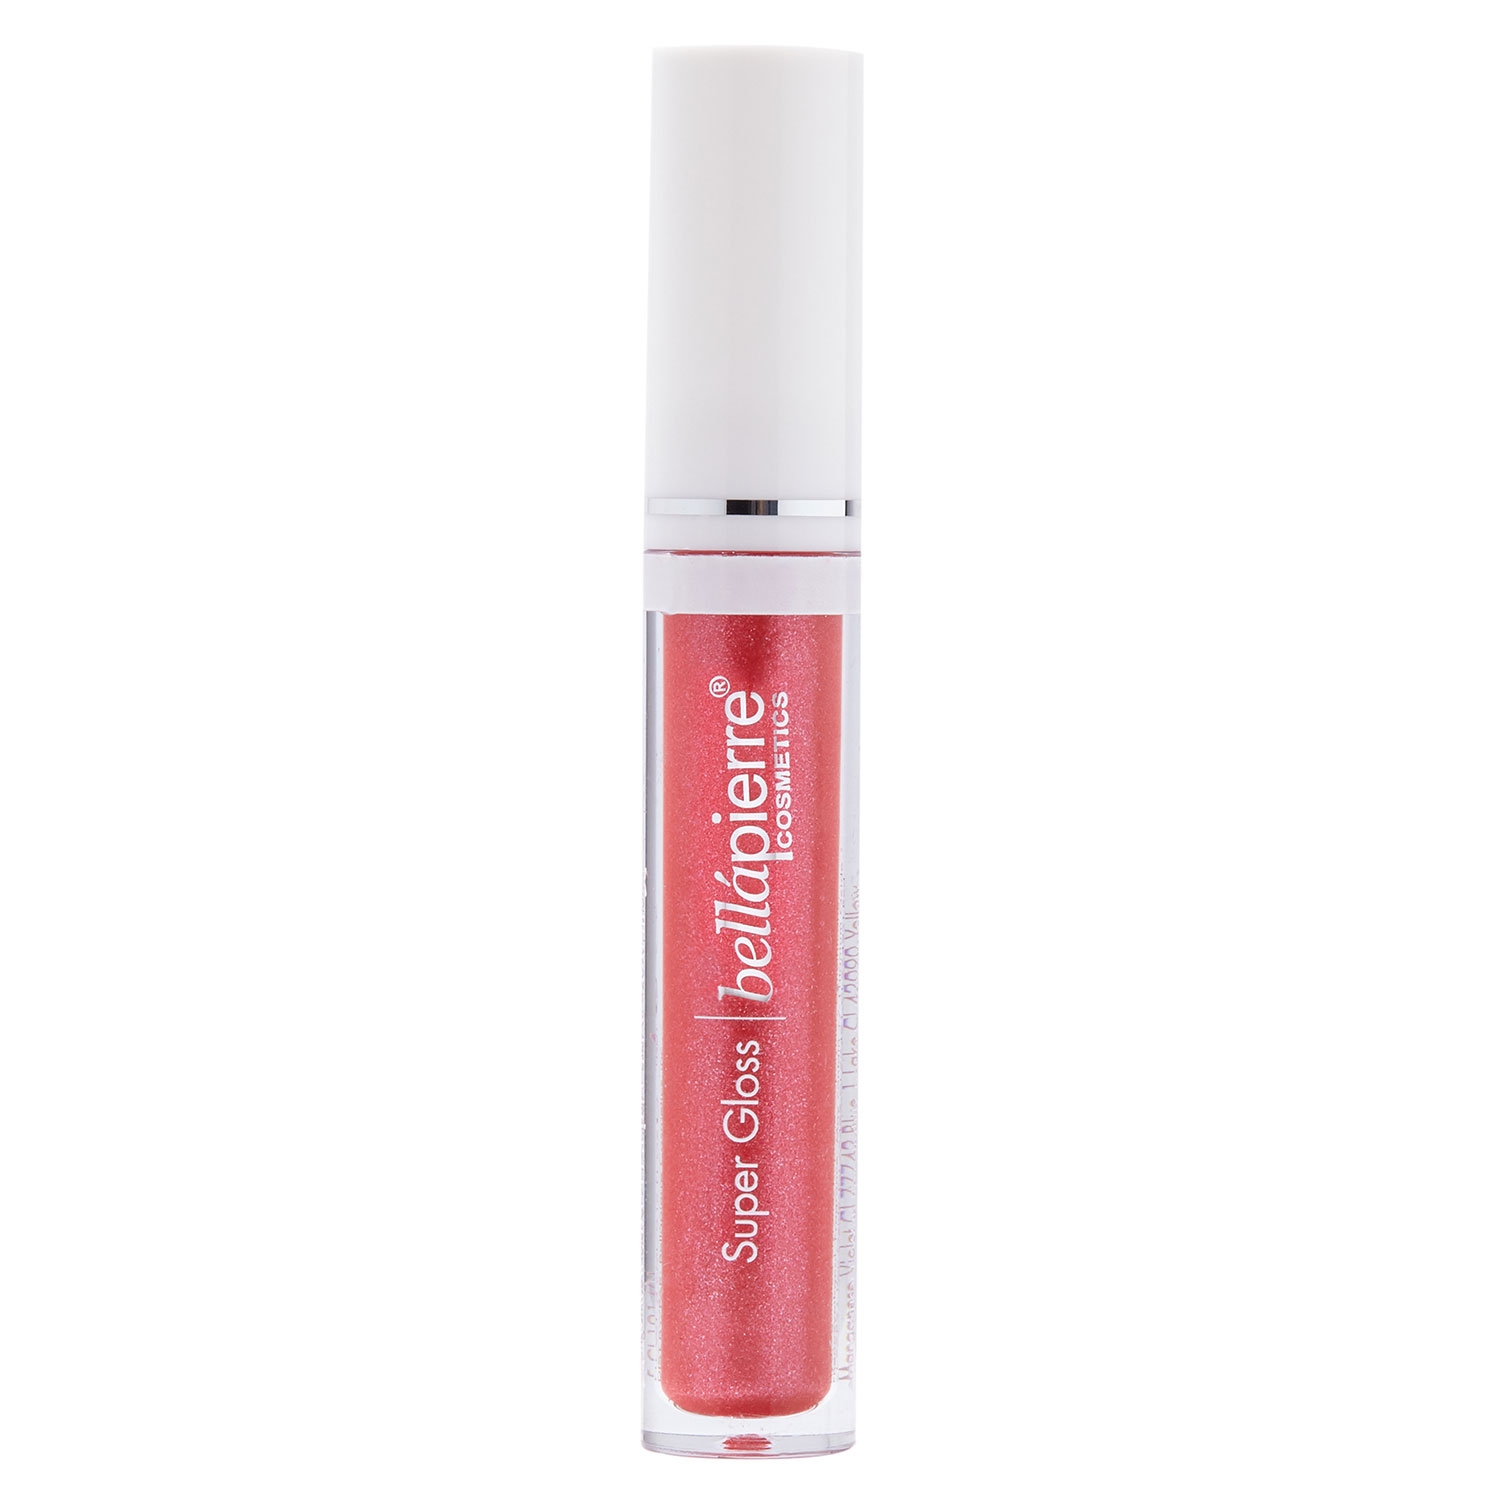 Produktbild von bellapierre Lips - Super Gloss Very Berry